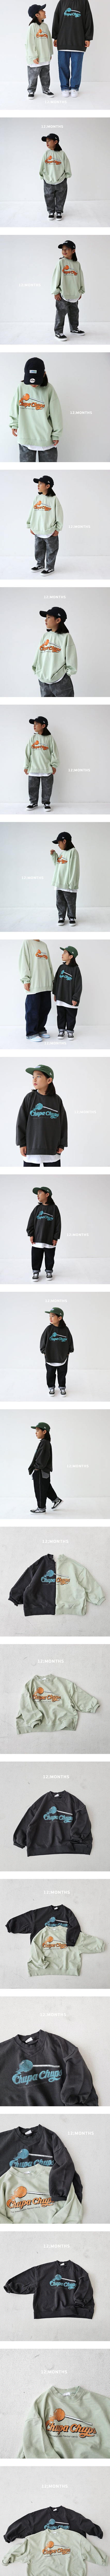 12 Month - Korean Children Fashion - #todddlerfashion - Candy Sweatshirt